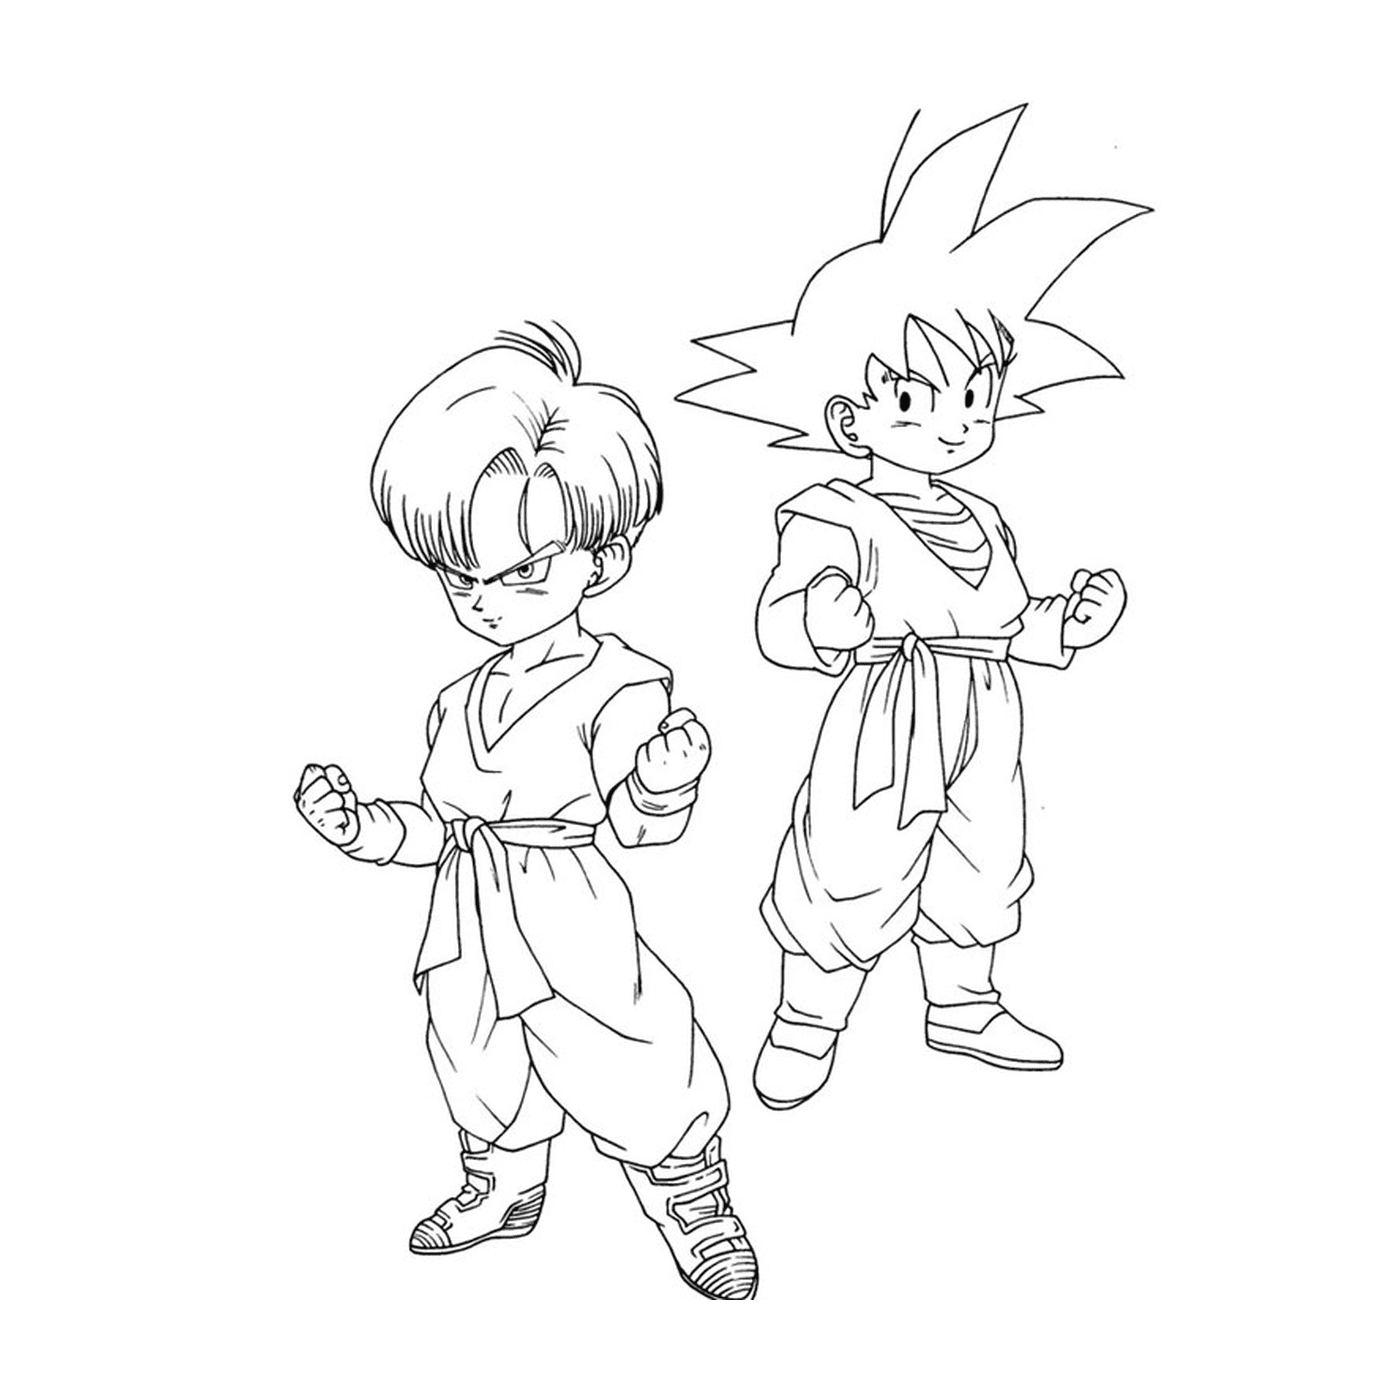  Goku und Gohan Kind von Dragon Ball Z 